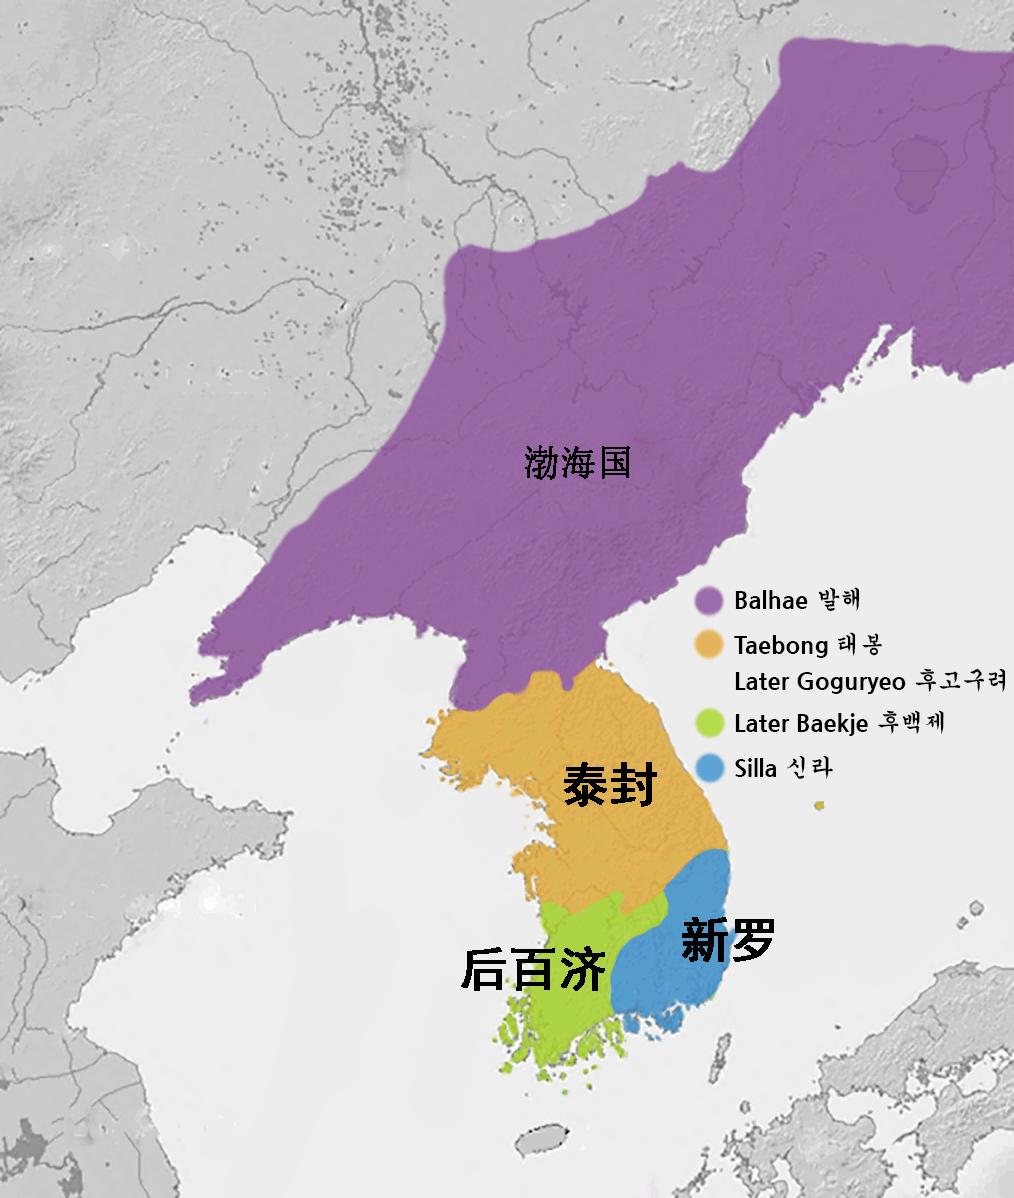 地图看世界韩国顽强游走于大国之间的国家